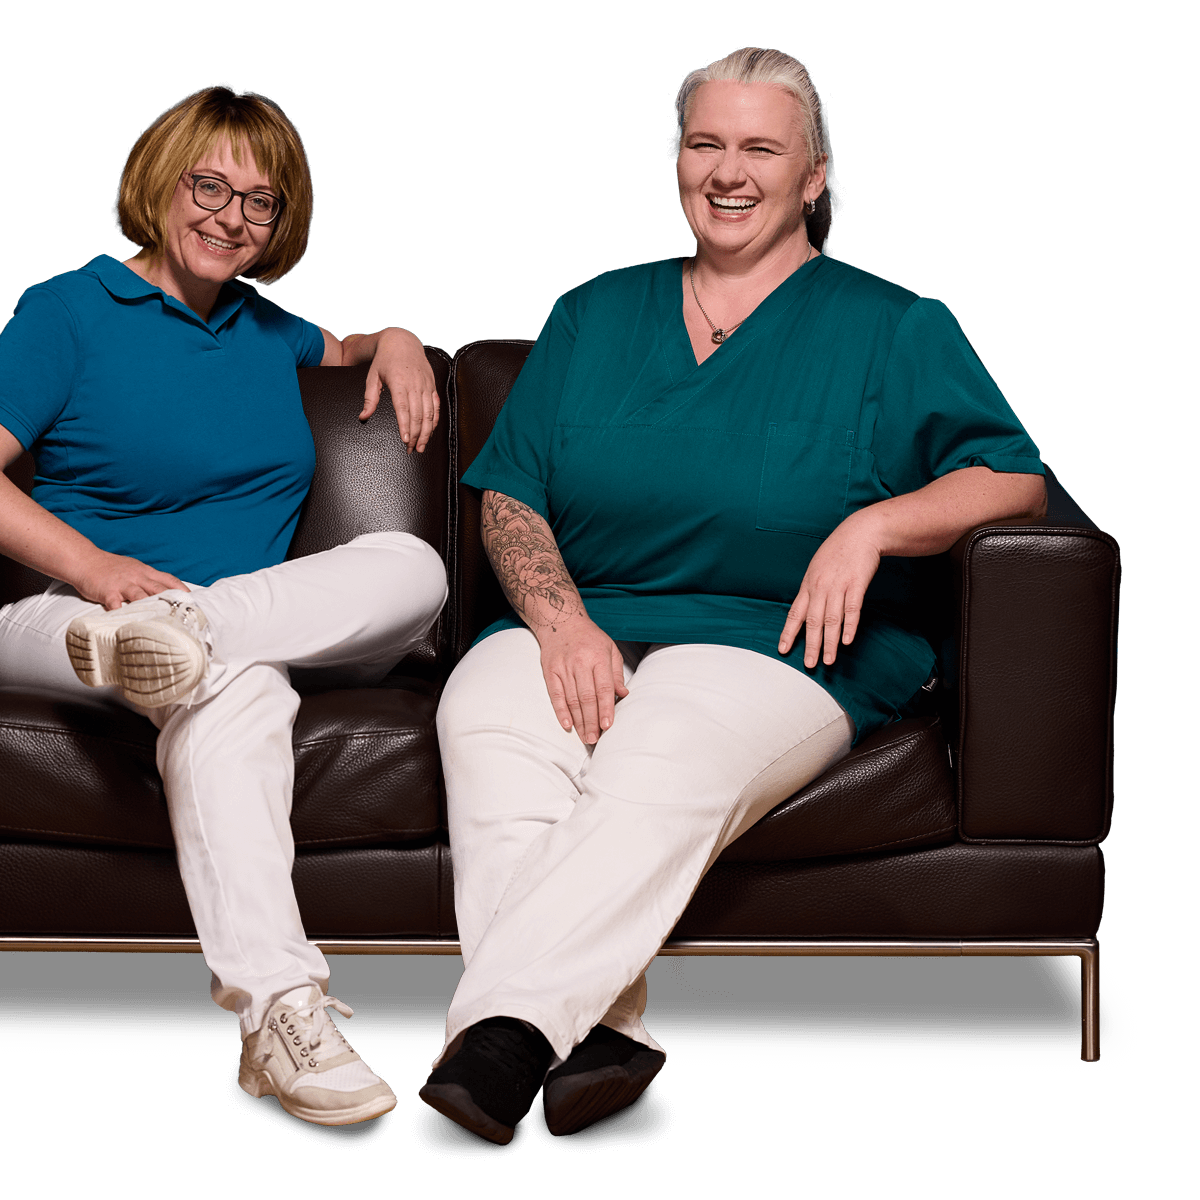 Zahnärztin Dr. Manuela Ringler und ihre Mitarbeiterin Frau Becker sitzen nebeneinander auf einer braunen Ledercouch